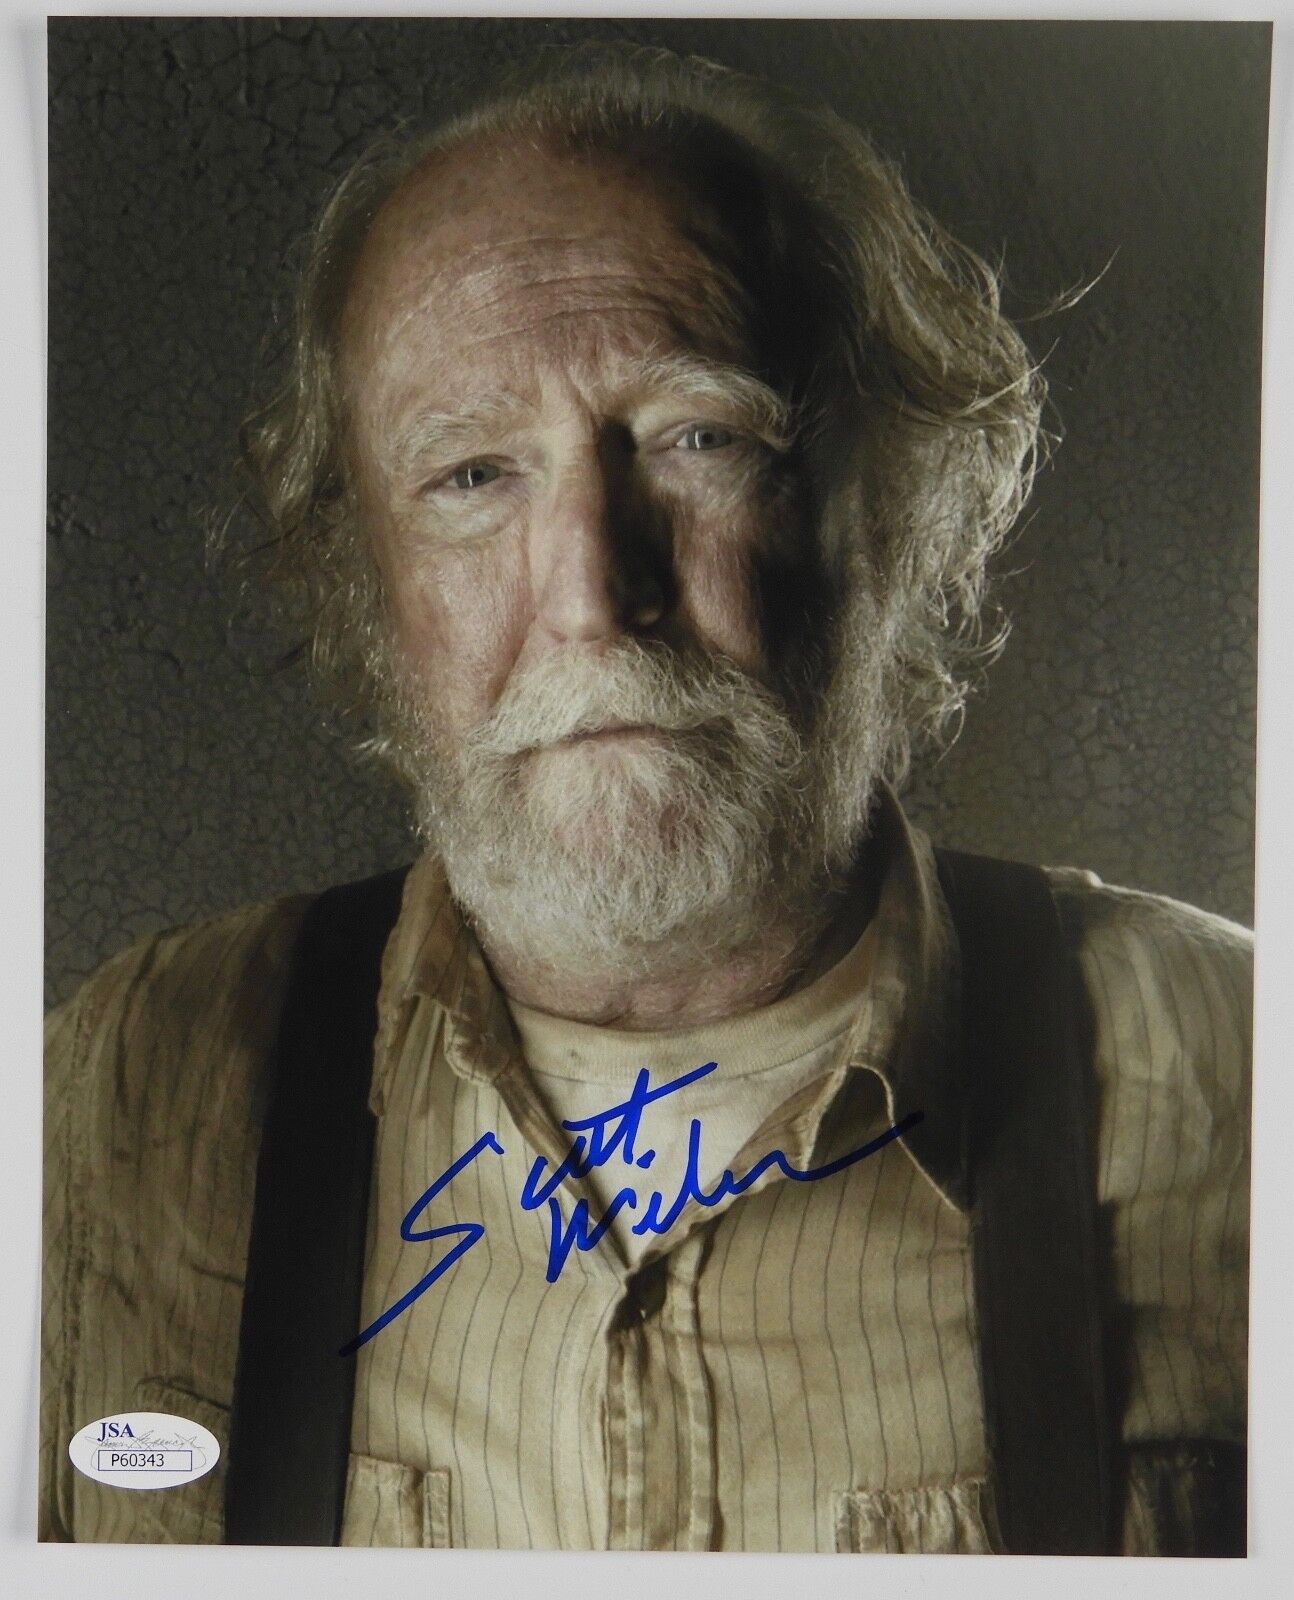 Scott Wilson Hershel The Walking Dead Autograph Signed Photo JSA 8 x 10